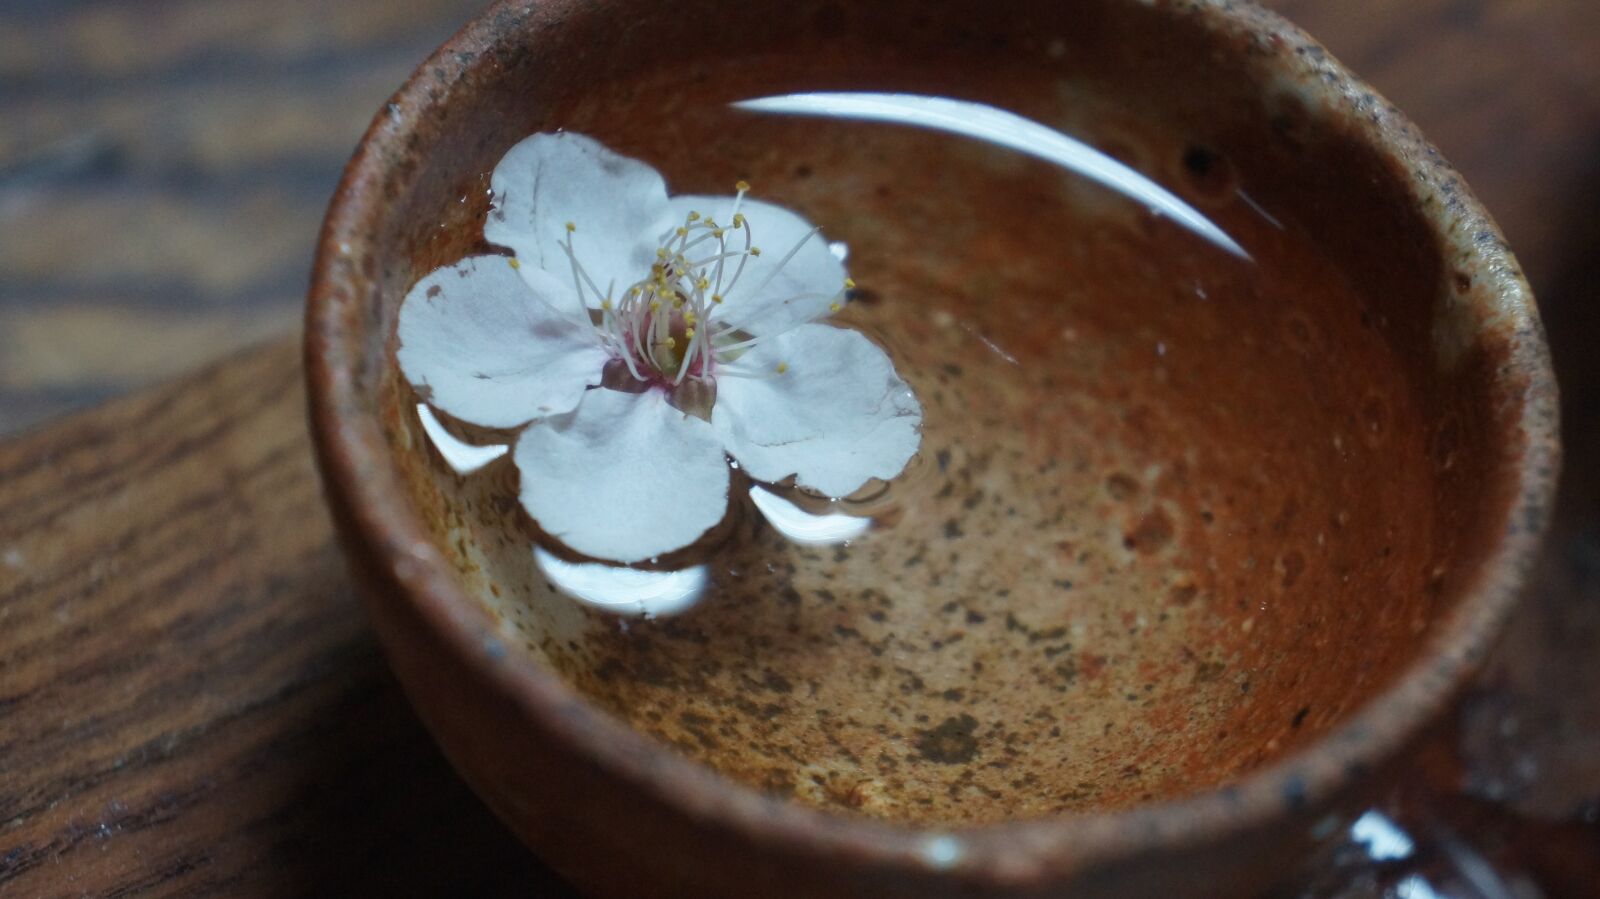 Sony Alpha NEX-F3 sample photo. Flower, blossom, teacup photography